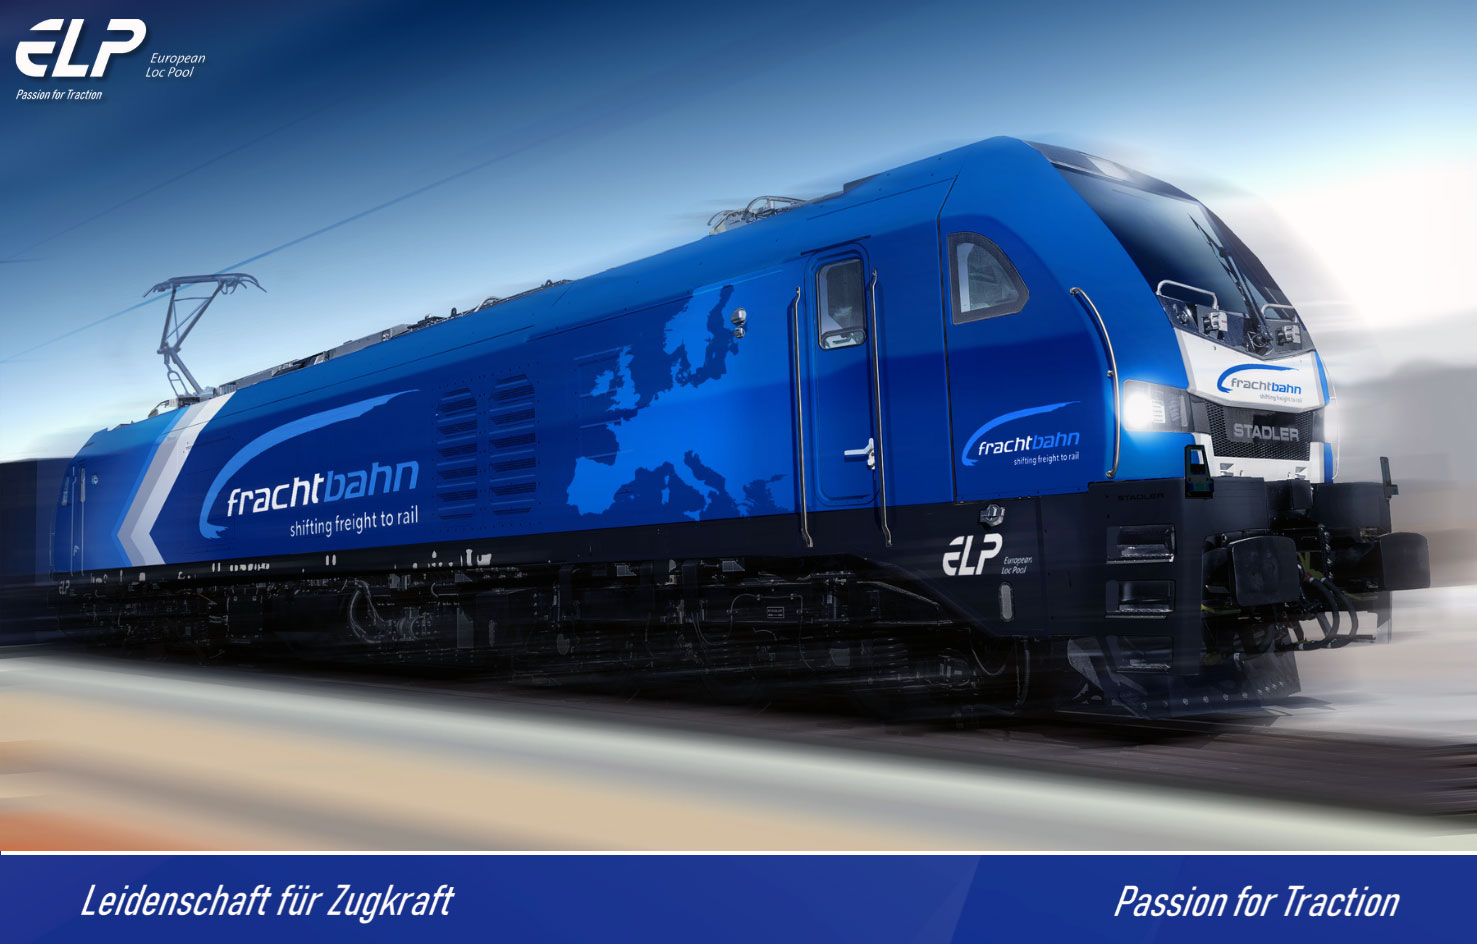 Frachtbahn EuroDual Visualisierung_ELP_1 24